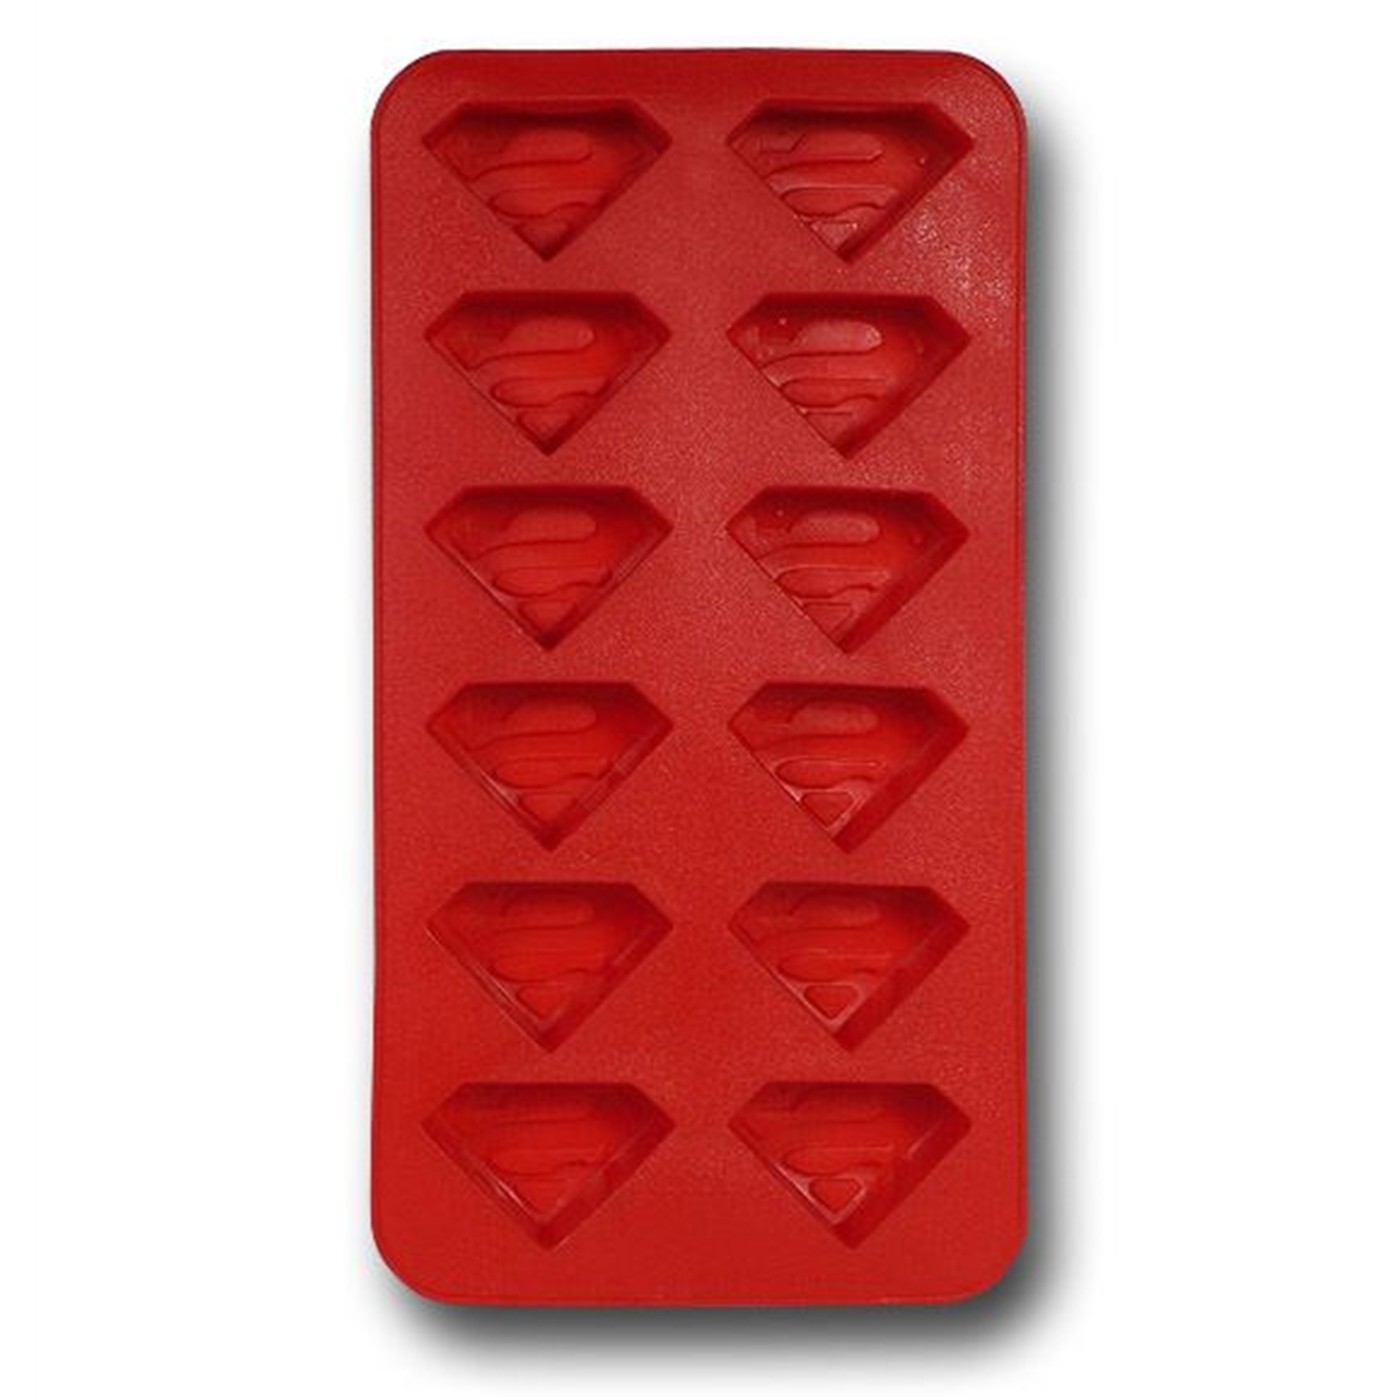 Superman Symbols Ice Cube Tray